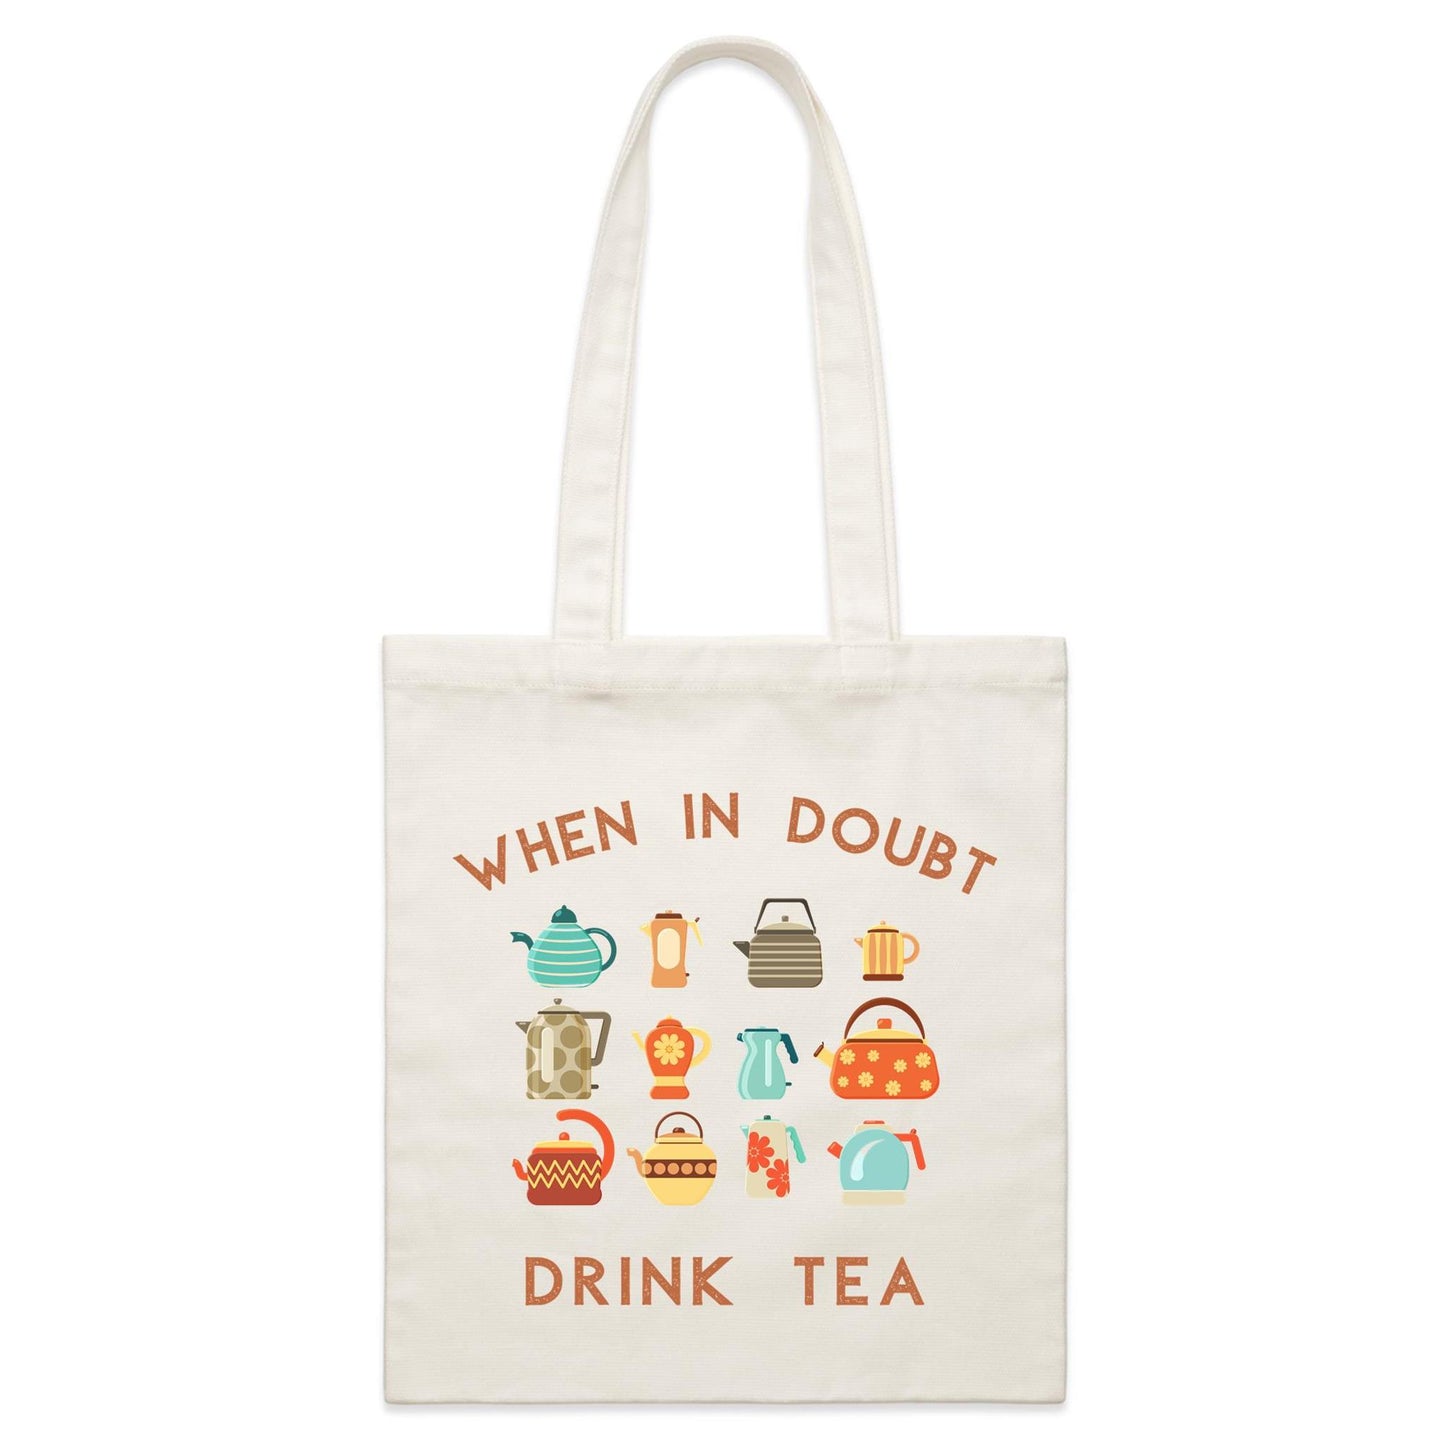 Drink Tea - Parcel Canvas Tote Bag Default Title Parcel Tote Bag